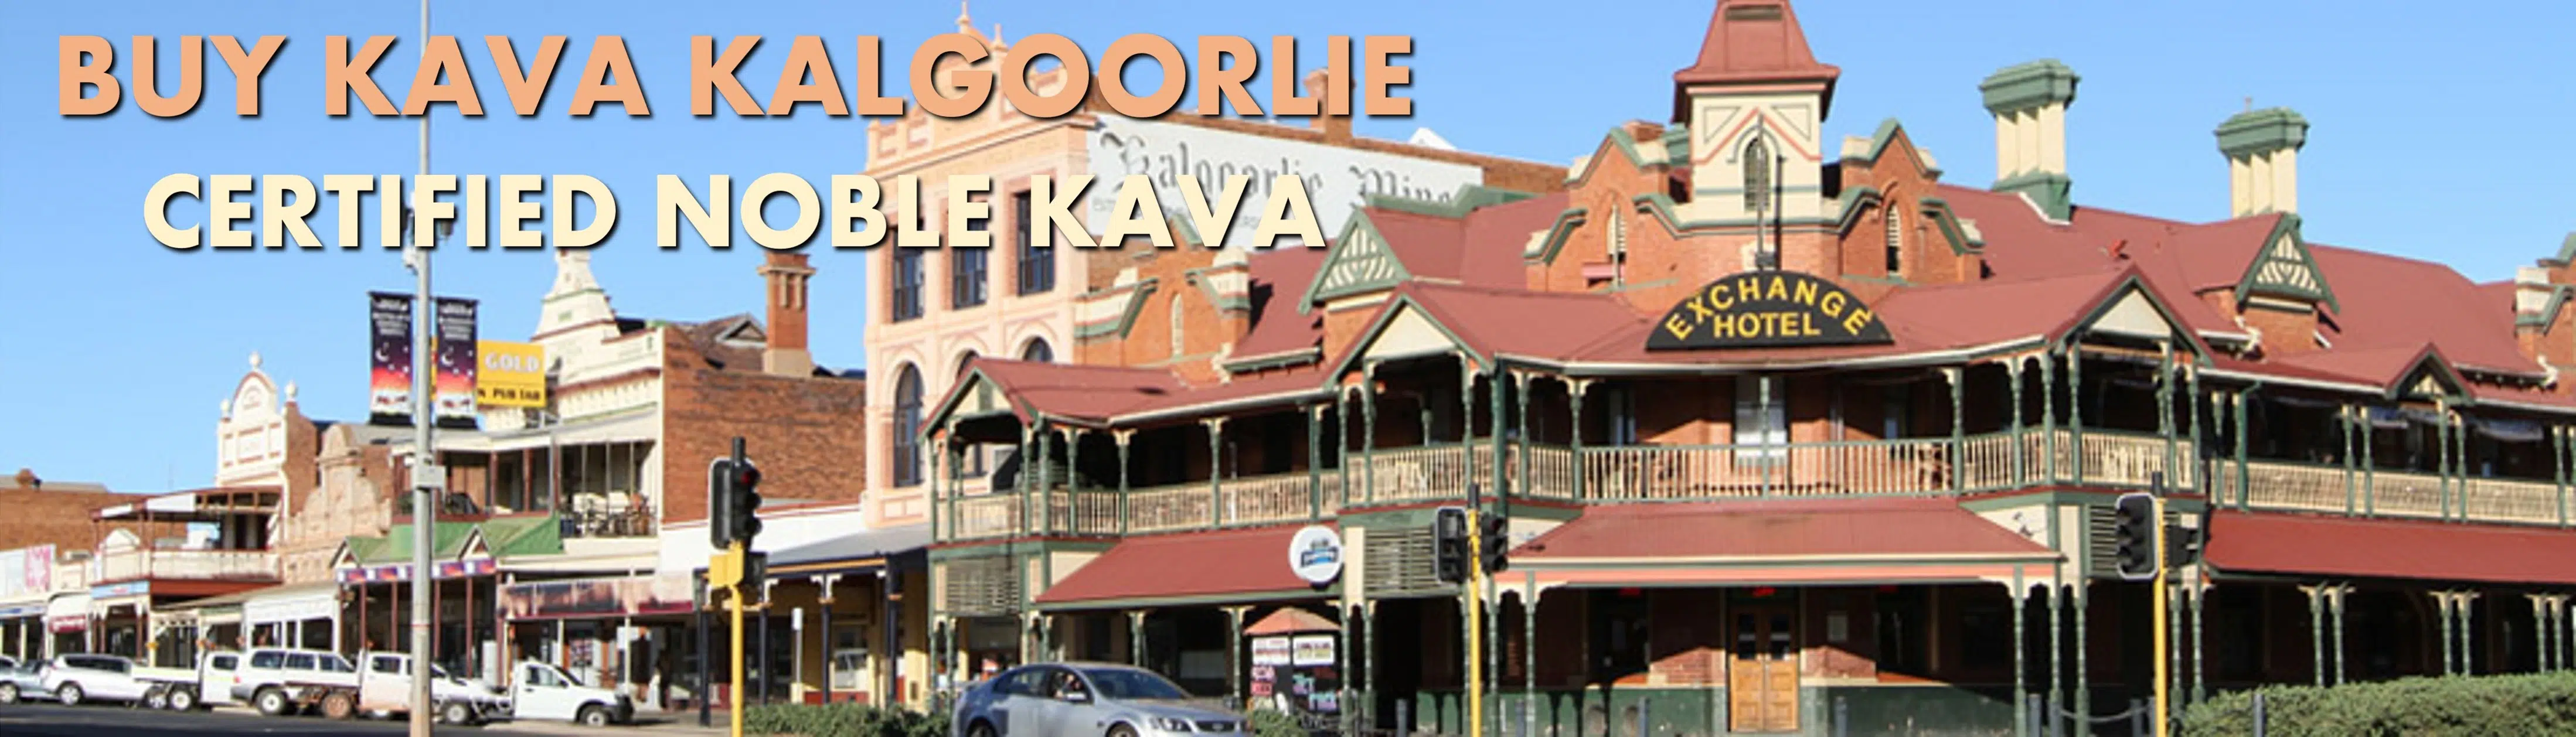 Street scene in Kalgoorlie Western Australia with caption Buy Kava Kalgoorlie Certified Noble Kava